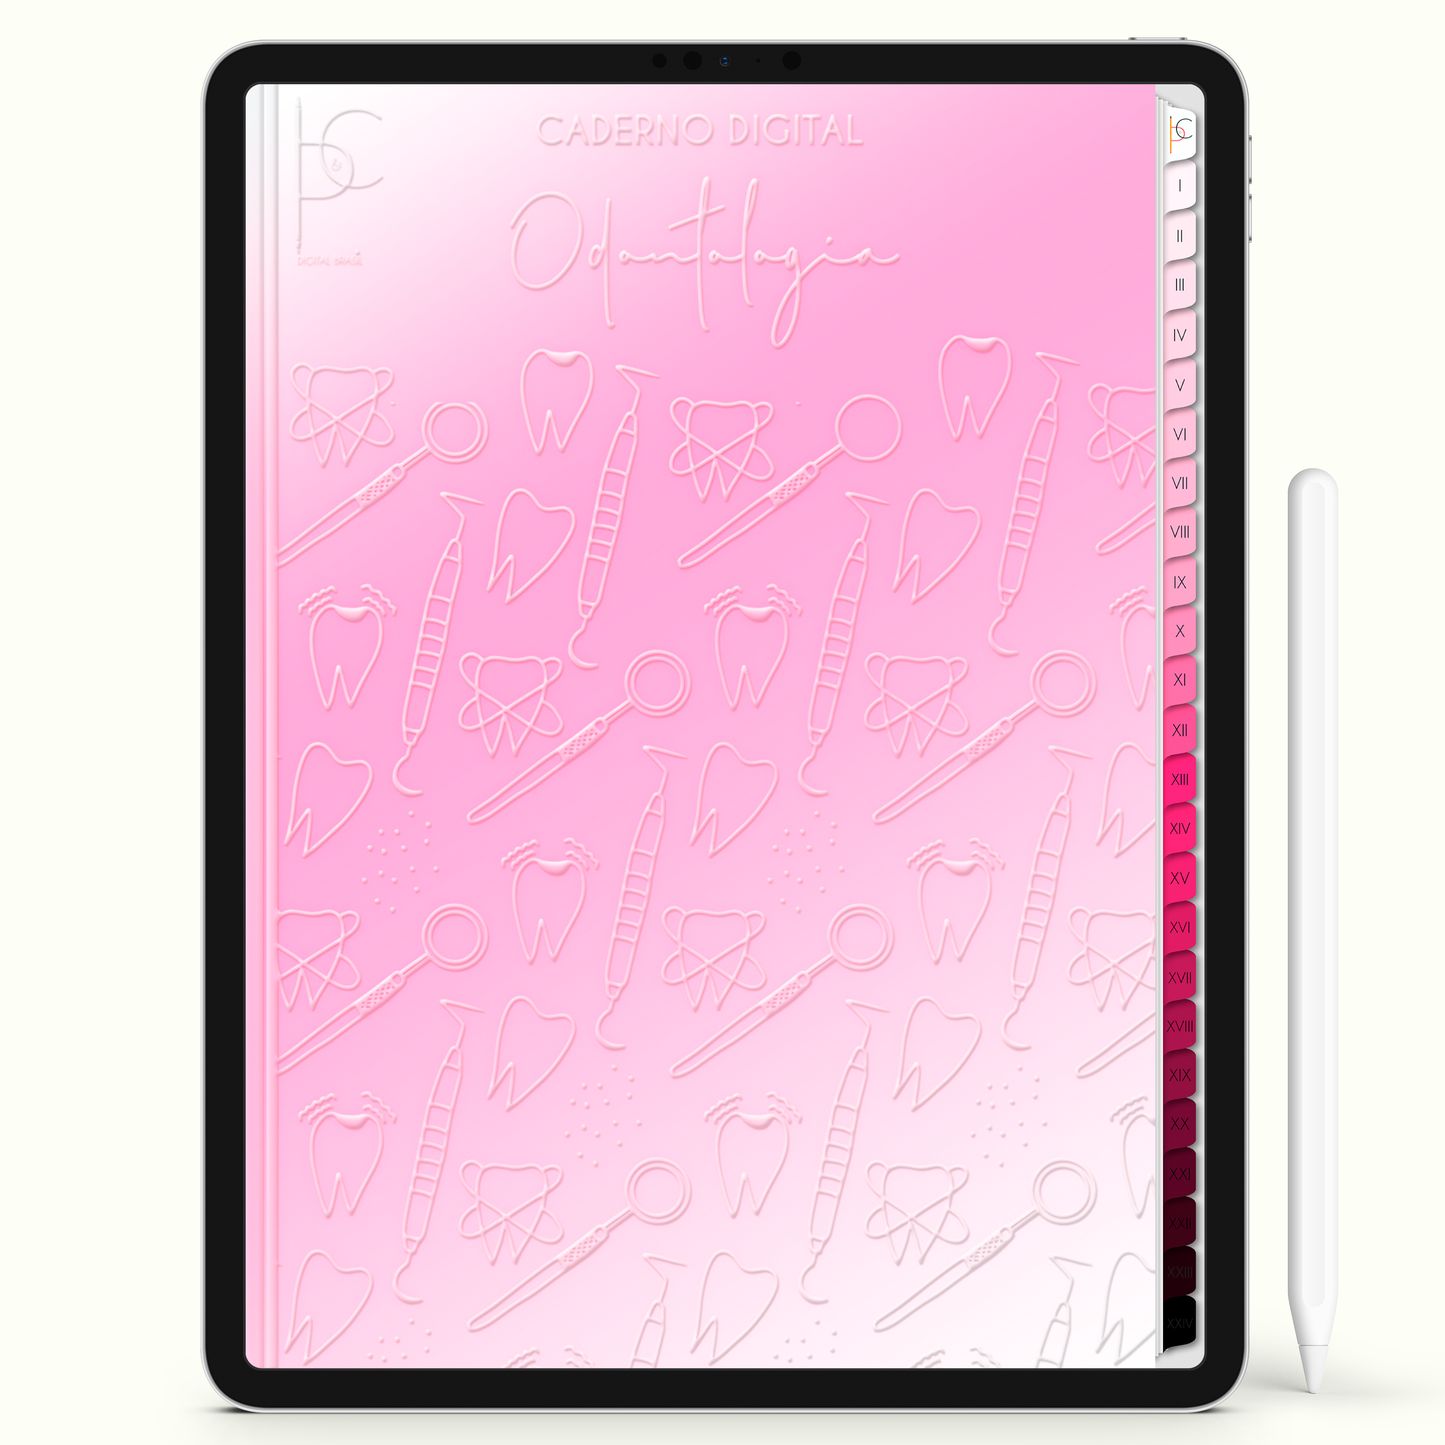 Caderno Digital Blush Odonto Odontologia 24 Matérias • iPad e Tablet Android • Download instantâneo • Sustentável